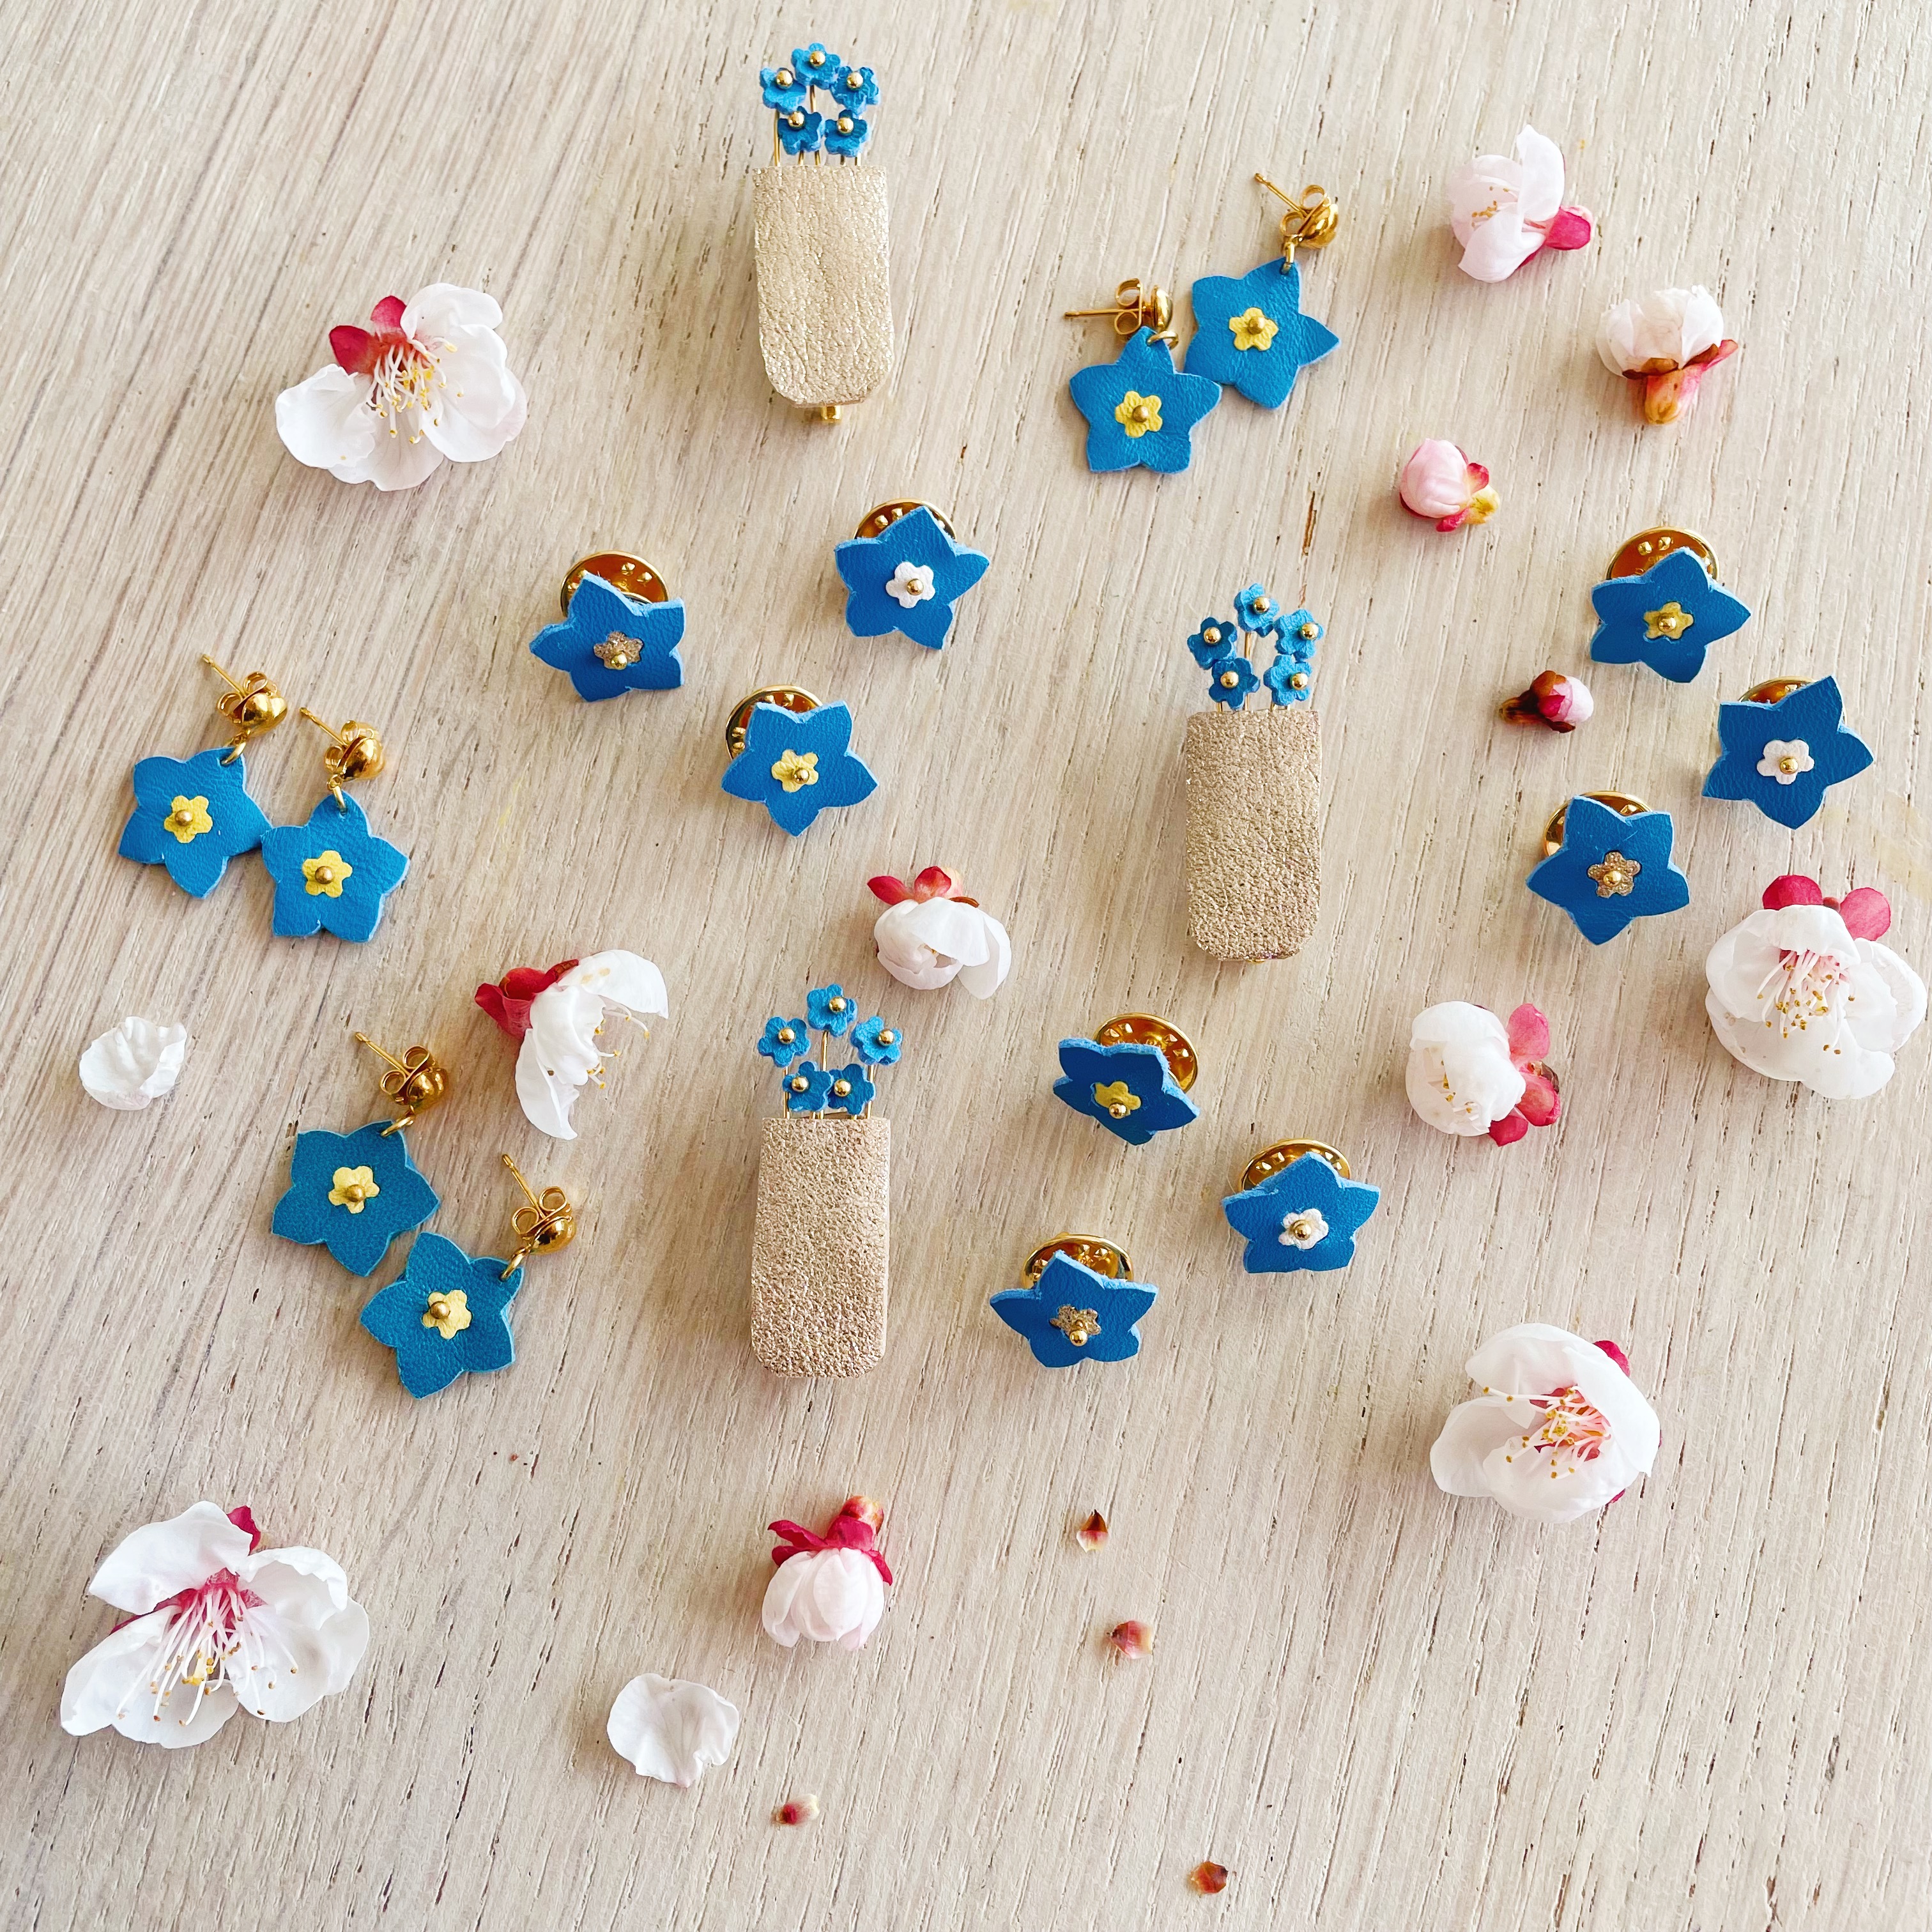 bijoux en cuir fleuris les myosotis, broches, boucles d'oreilles et pins poétiques made in France - du vent dans mes valises artisan d'art 9